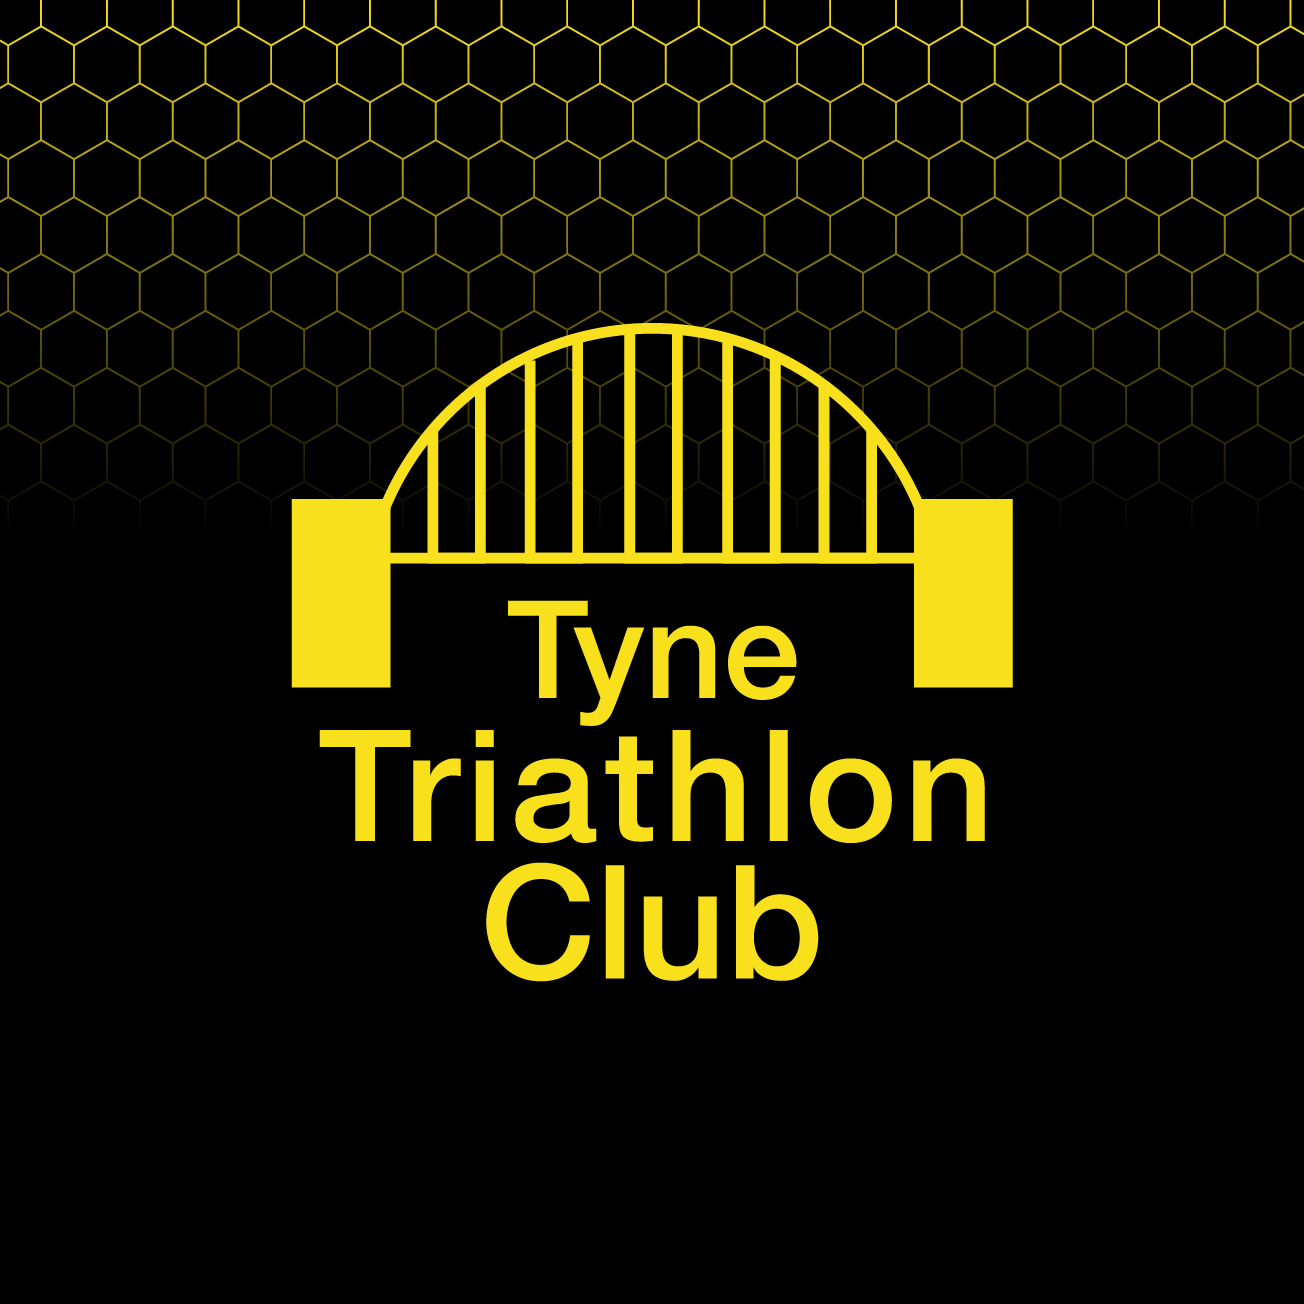 Club Image for TYNE TRIATHLON CLUB